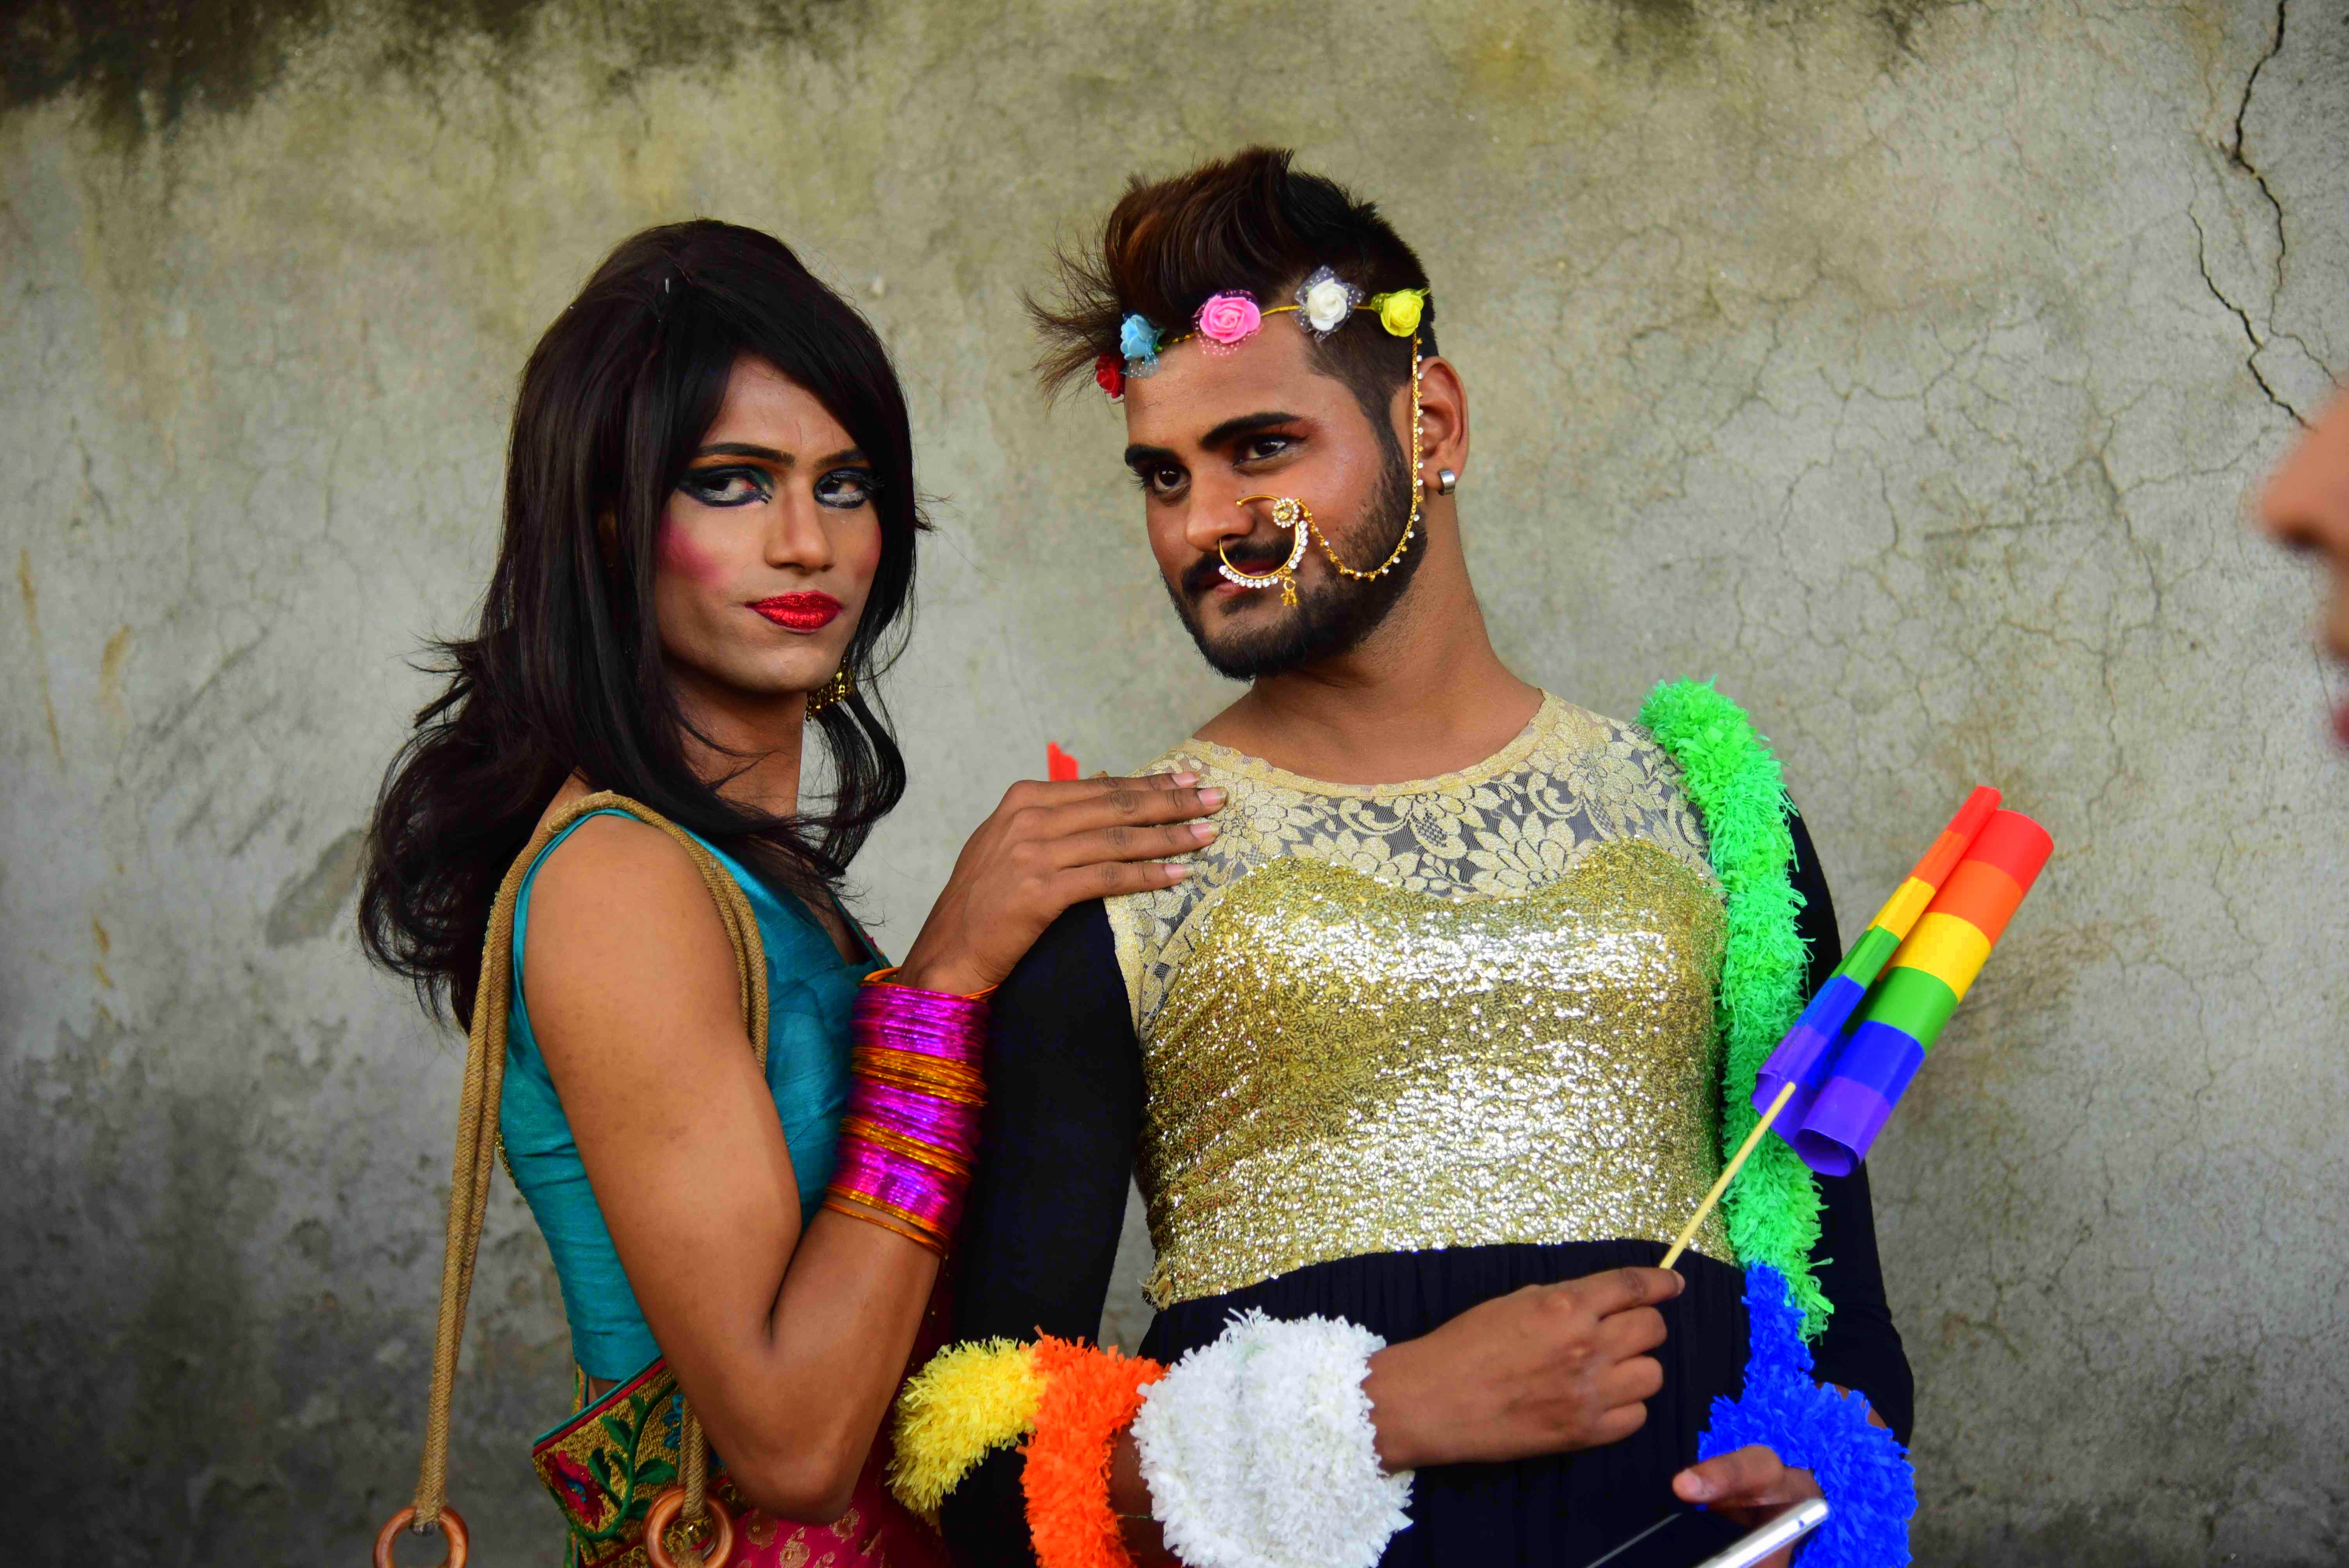 lgbt pride in india. delhi, gay pride march